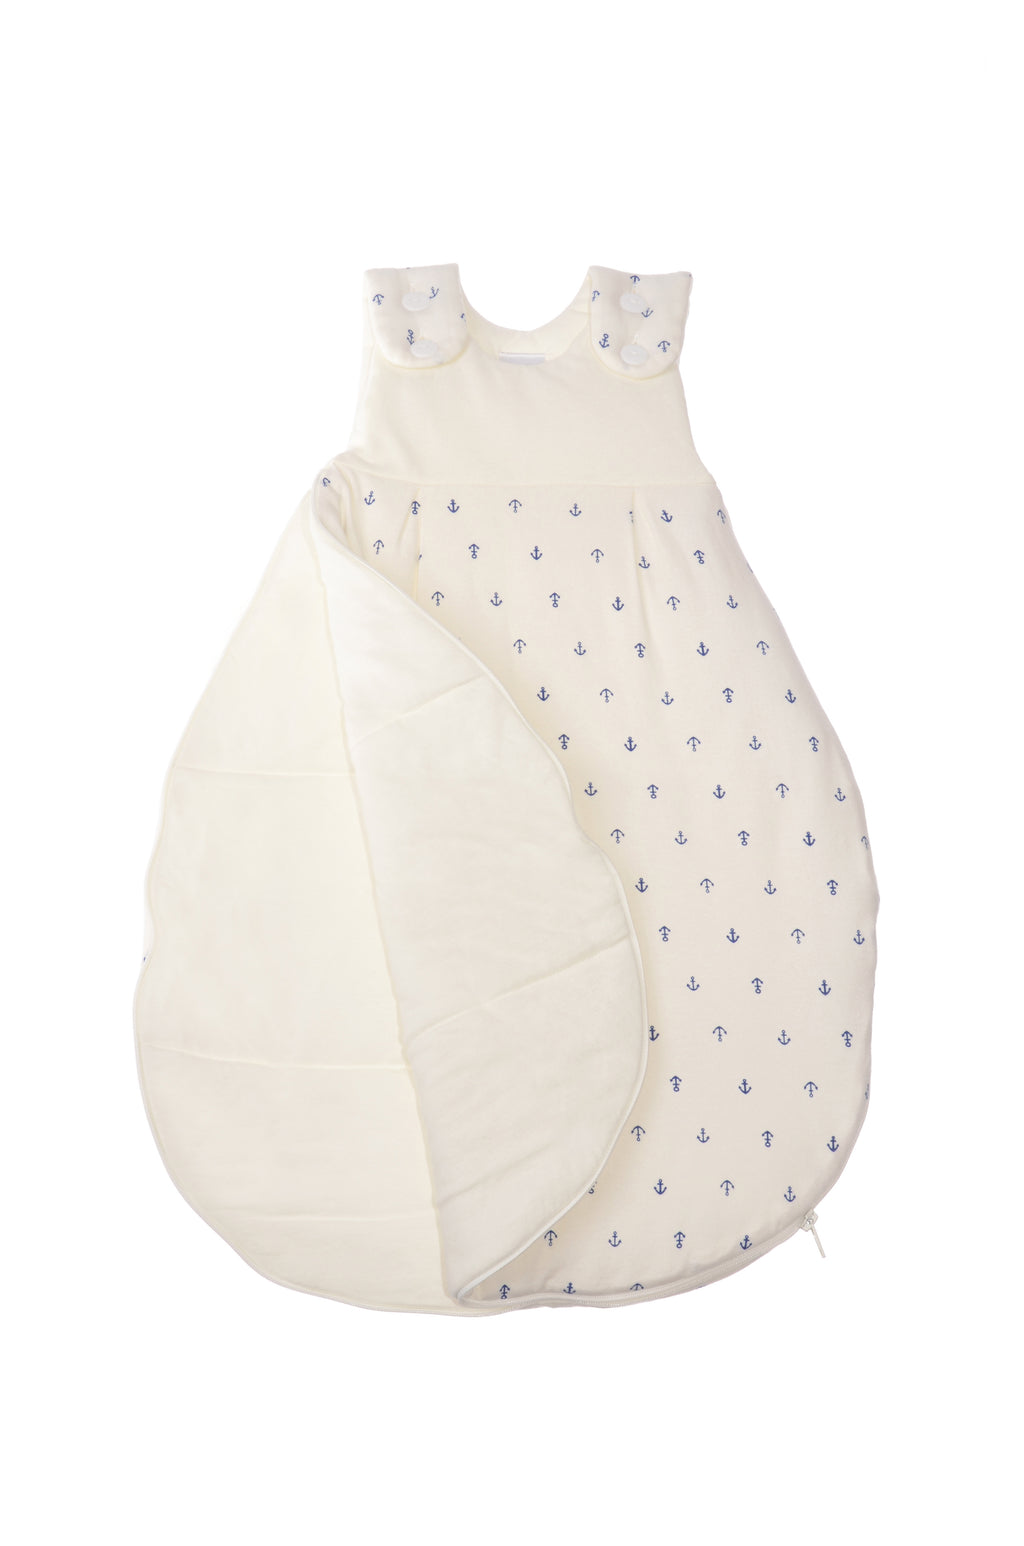 Schlafsack für Babys in unterschiedlichen Längen mit Knöpfen und Reißverschluss an der Seite. Design:  Anker